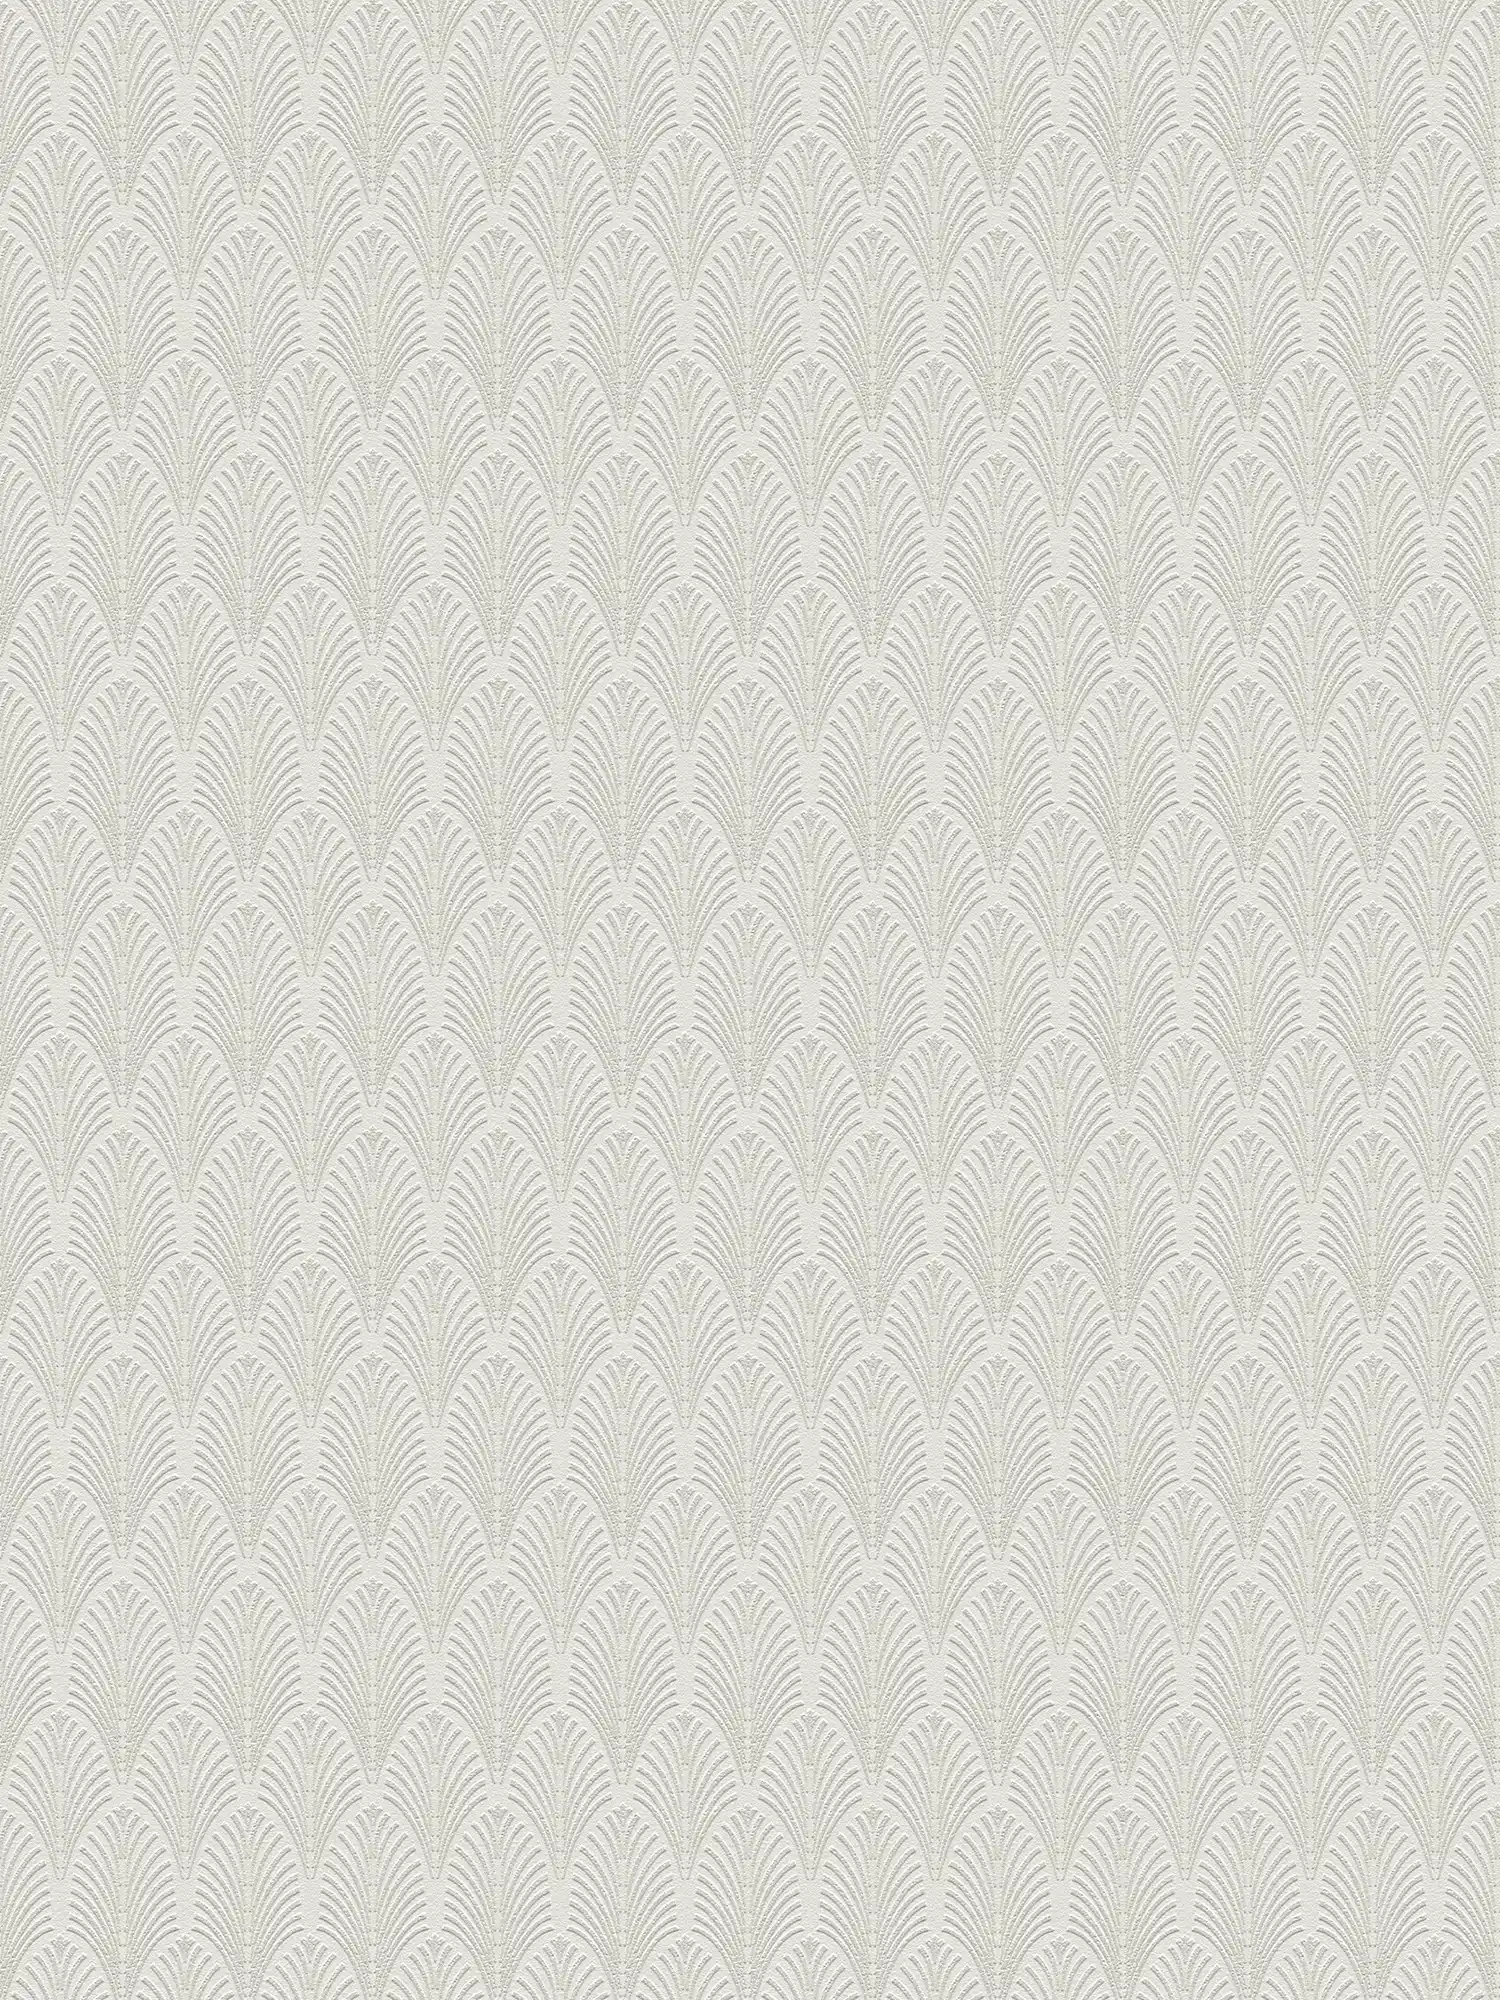 Mustertapete Metallic-Design im Art-Deco-Stil – Weiß, Silber
